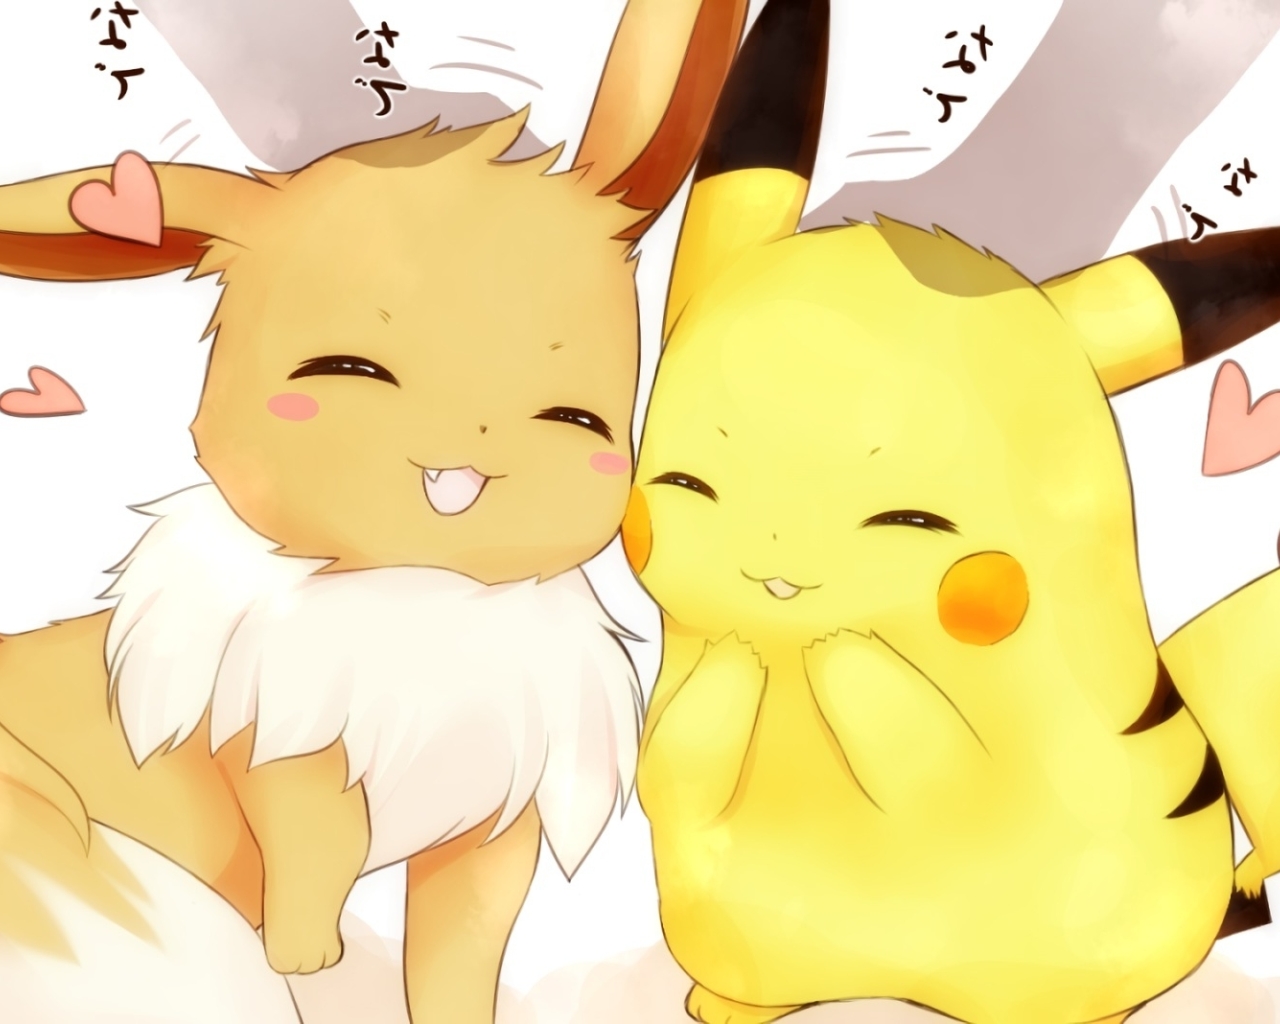 cute pokemon pikachu wallpaper